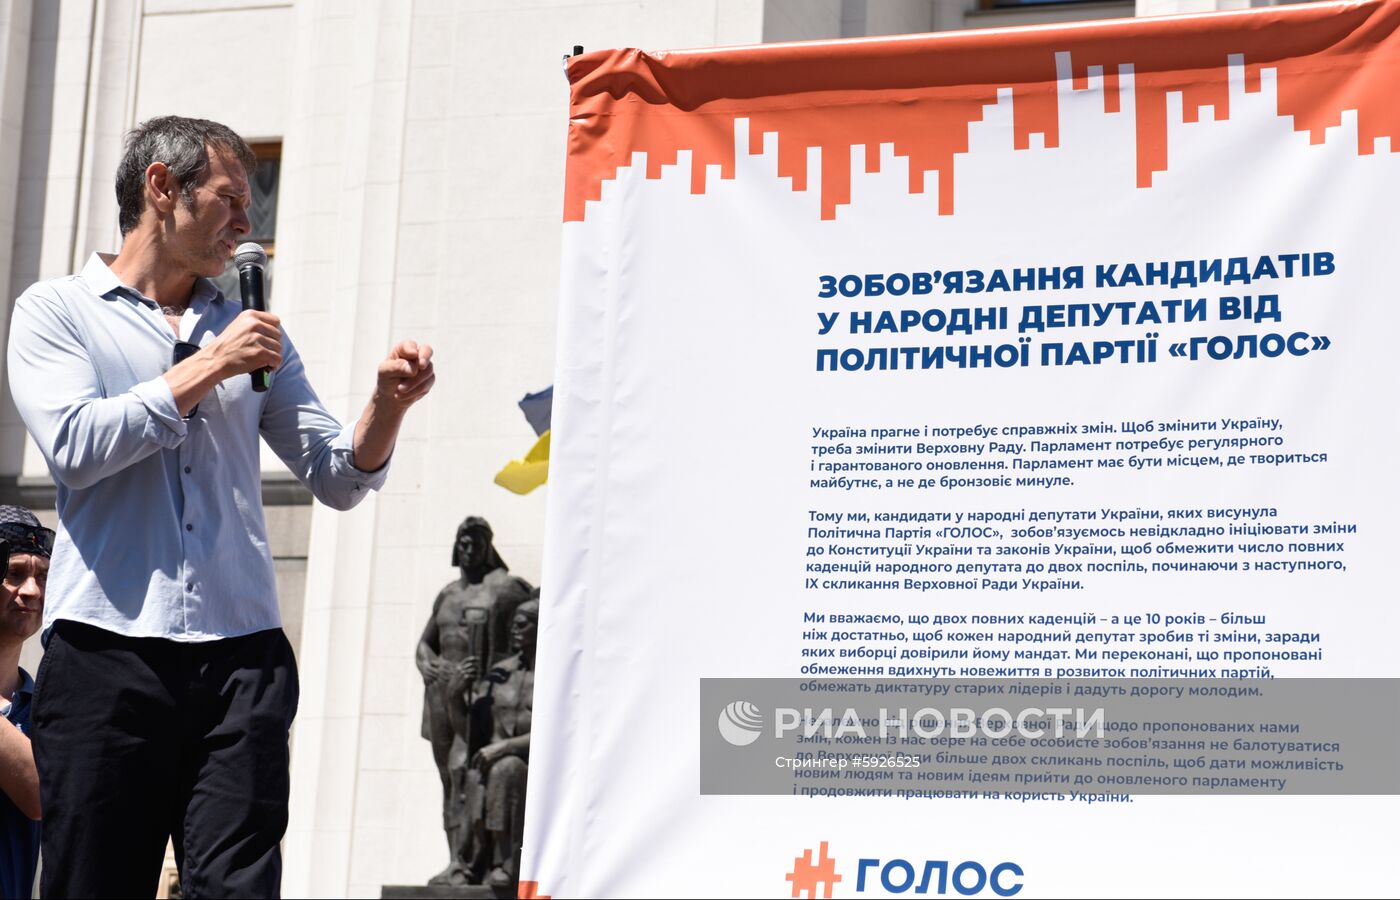 Акция сторонников партии "Голос" в Киеве